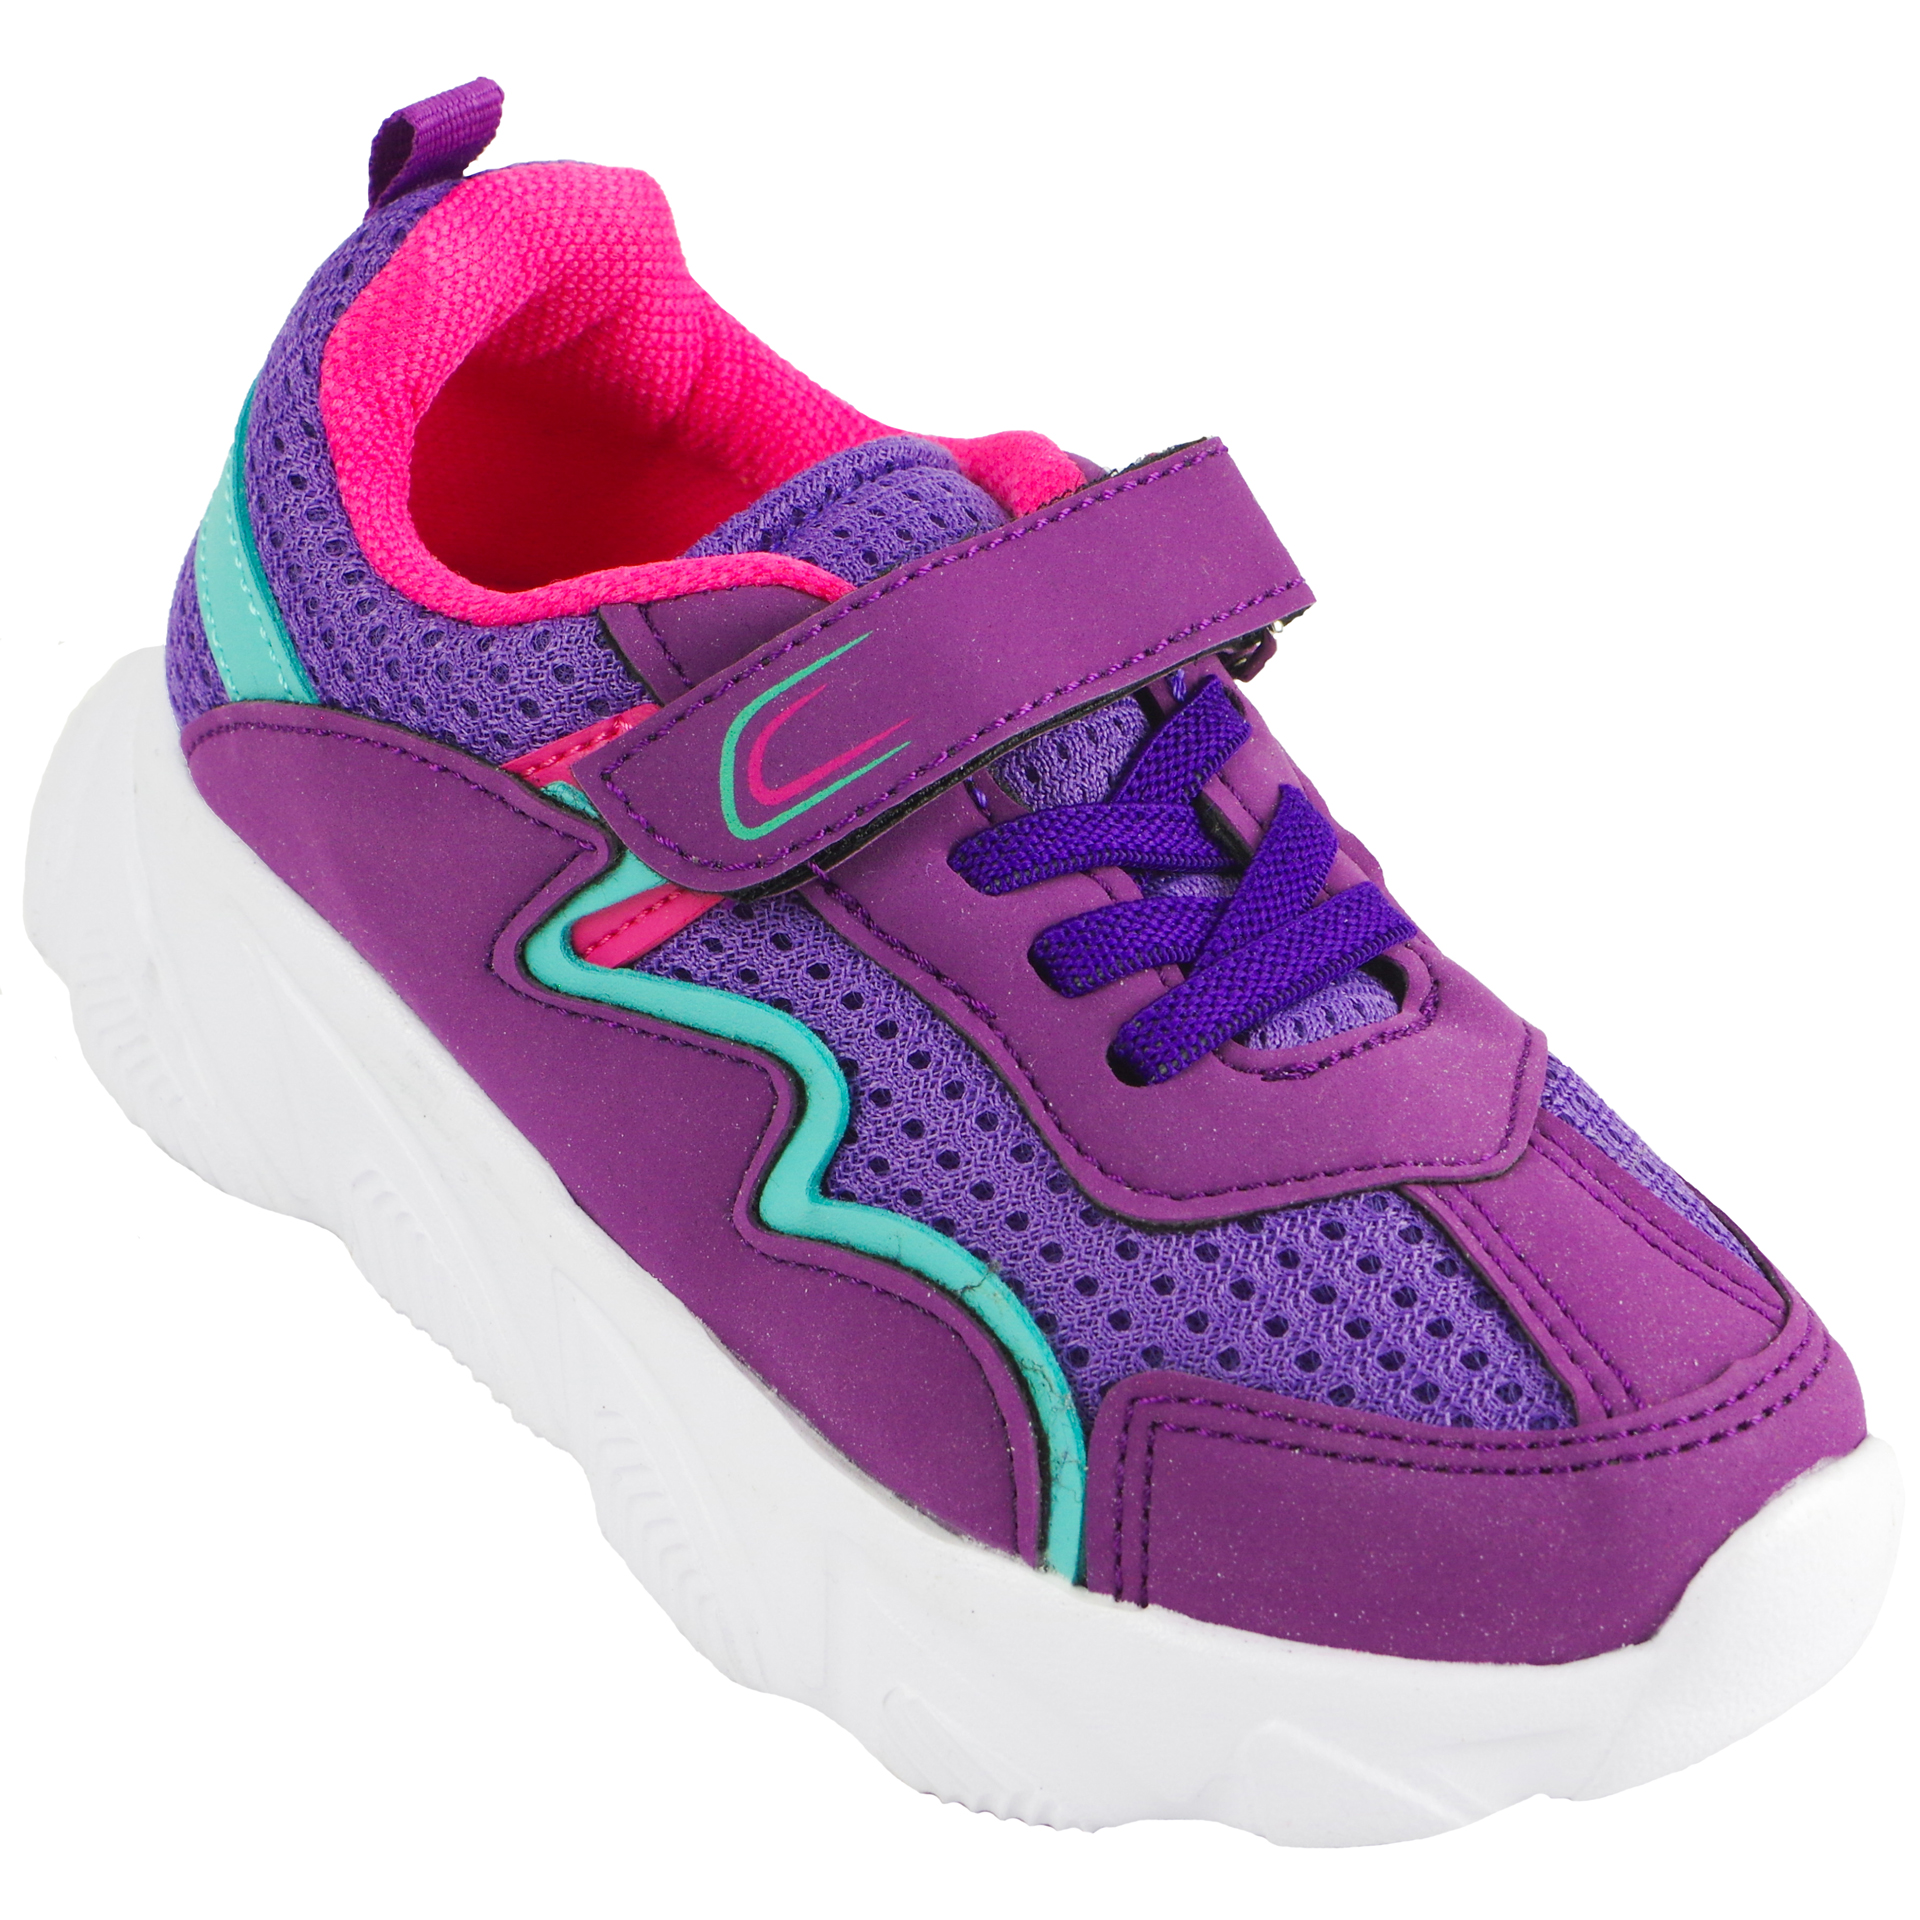 Кросівки для дівчат (2030) для дівчинки, матеріал Текстиль, Фіолетовий колір, 26-30 розміри – Sole Kids. Фото 1